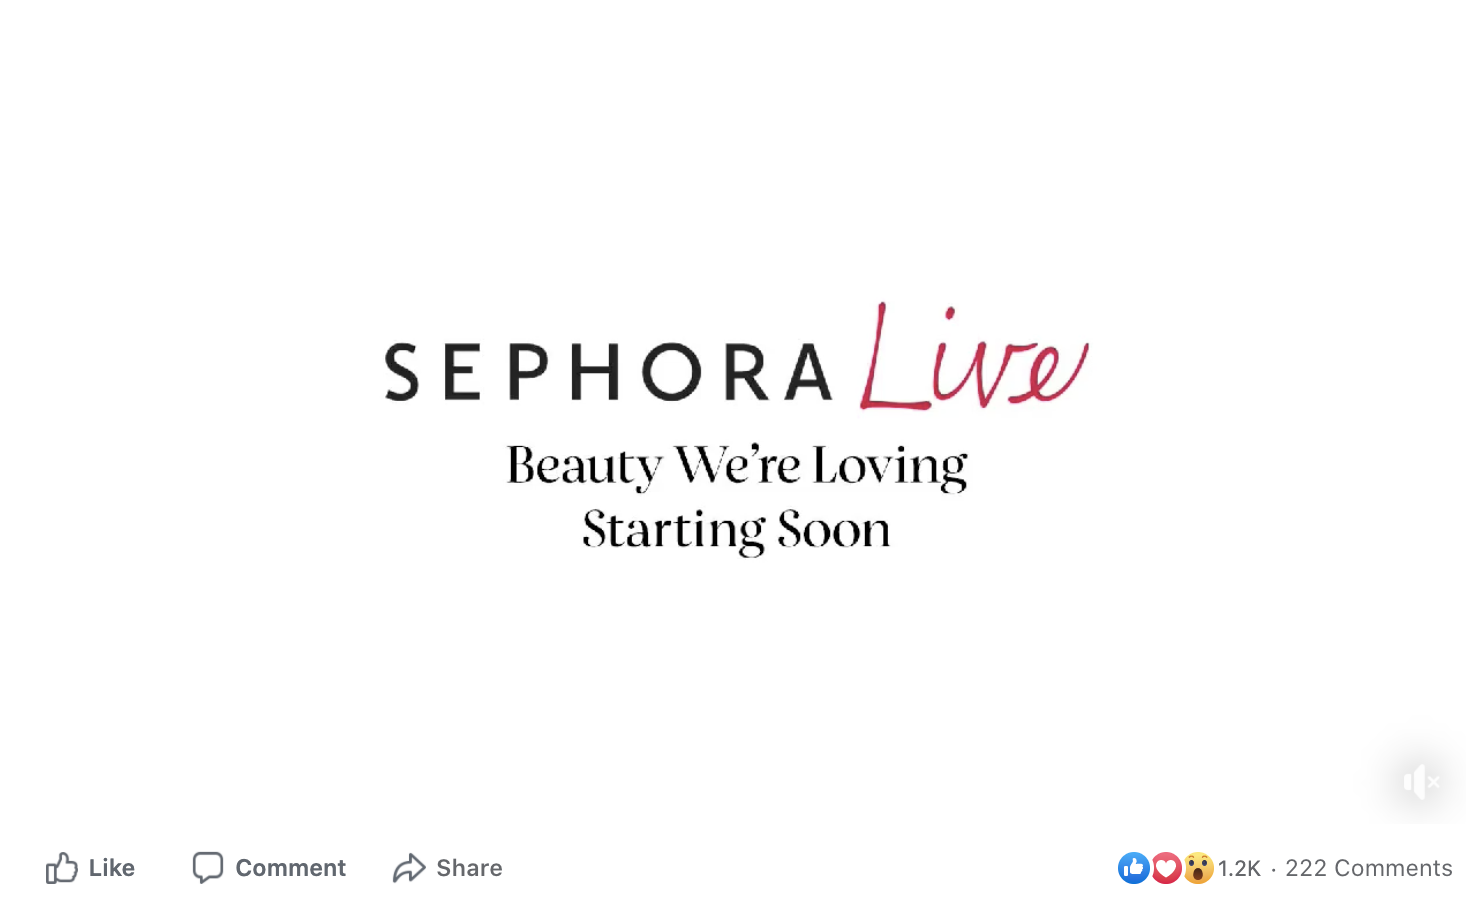 Sephora Facebook ad